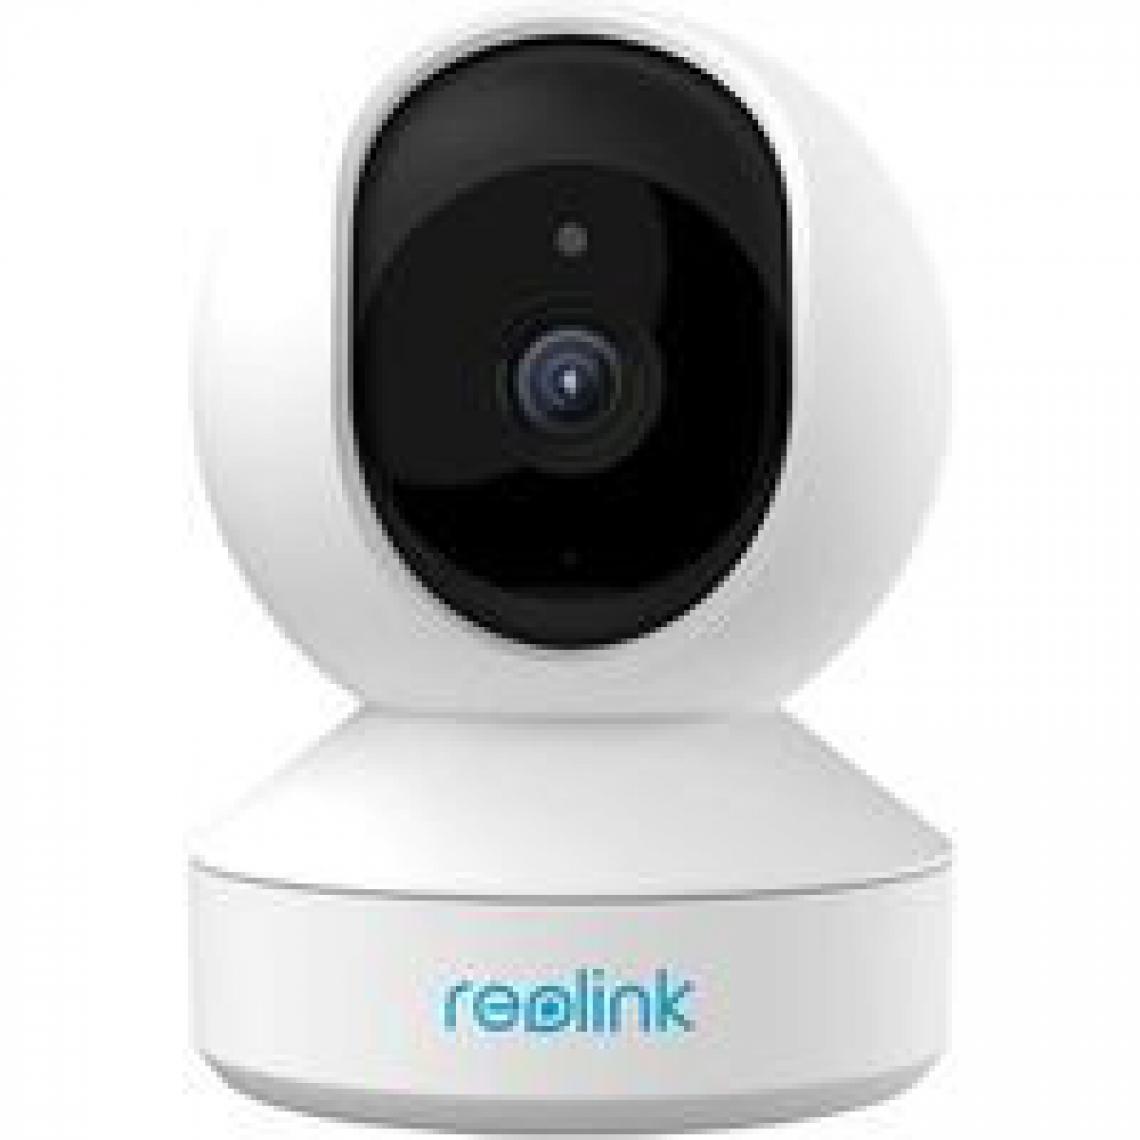 Reolink - 3MP Caméra Surveillance WiFi - E1- Caméra IP Pan & Tilt Intérieure Moniteur Vidéo pour Bébé, Vision Nocturne, Audio Bidirectionnel- E1 - Caméra de surveillance connectée